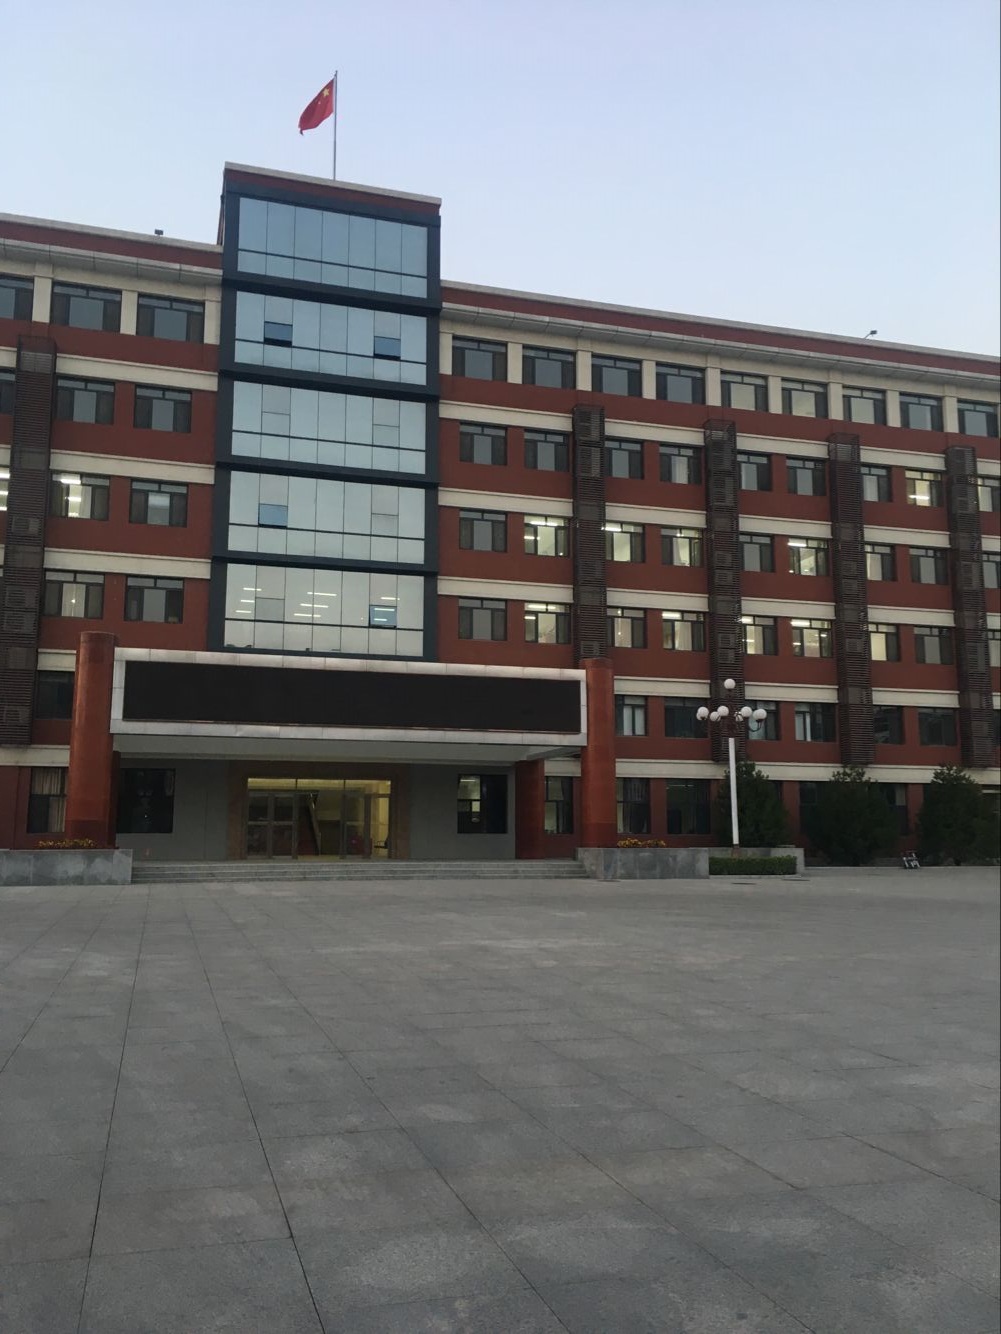 中国矿业大学